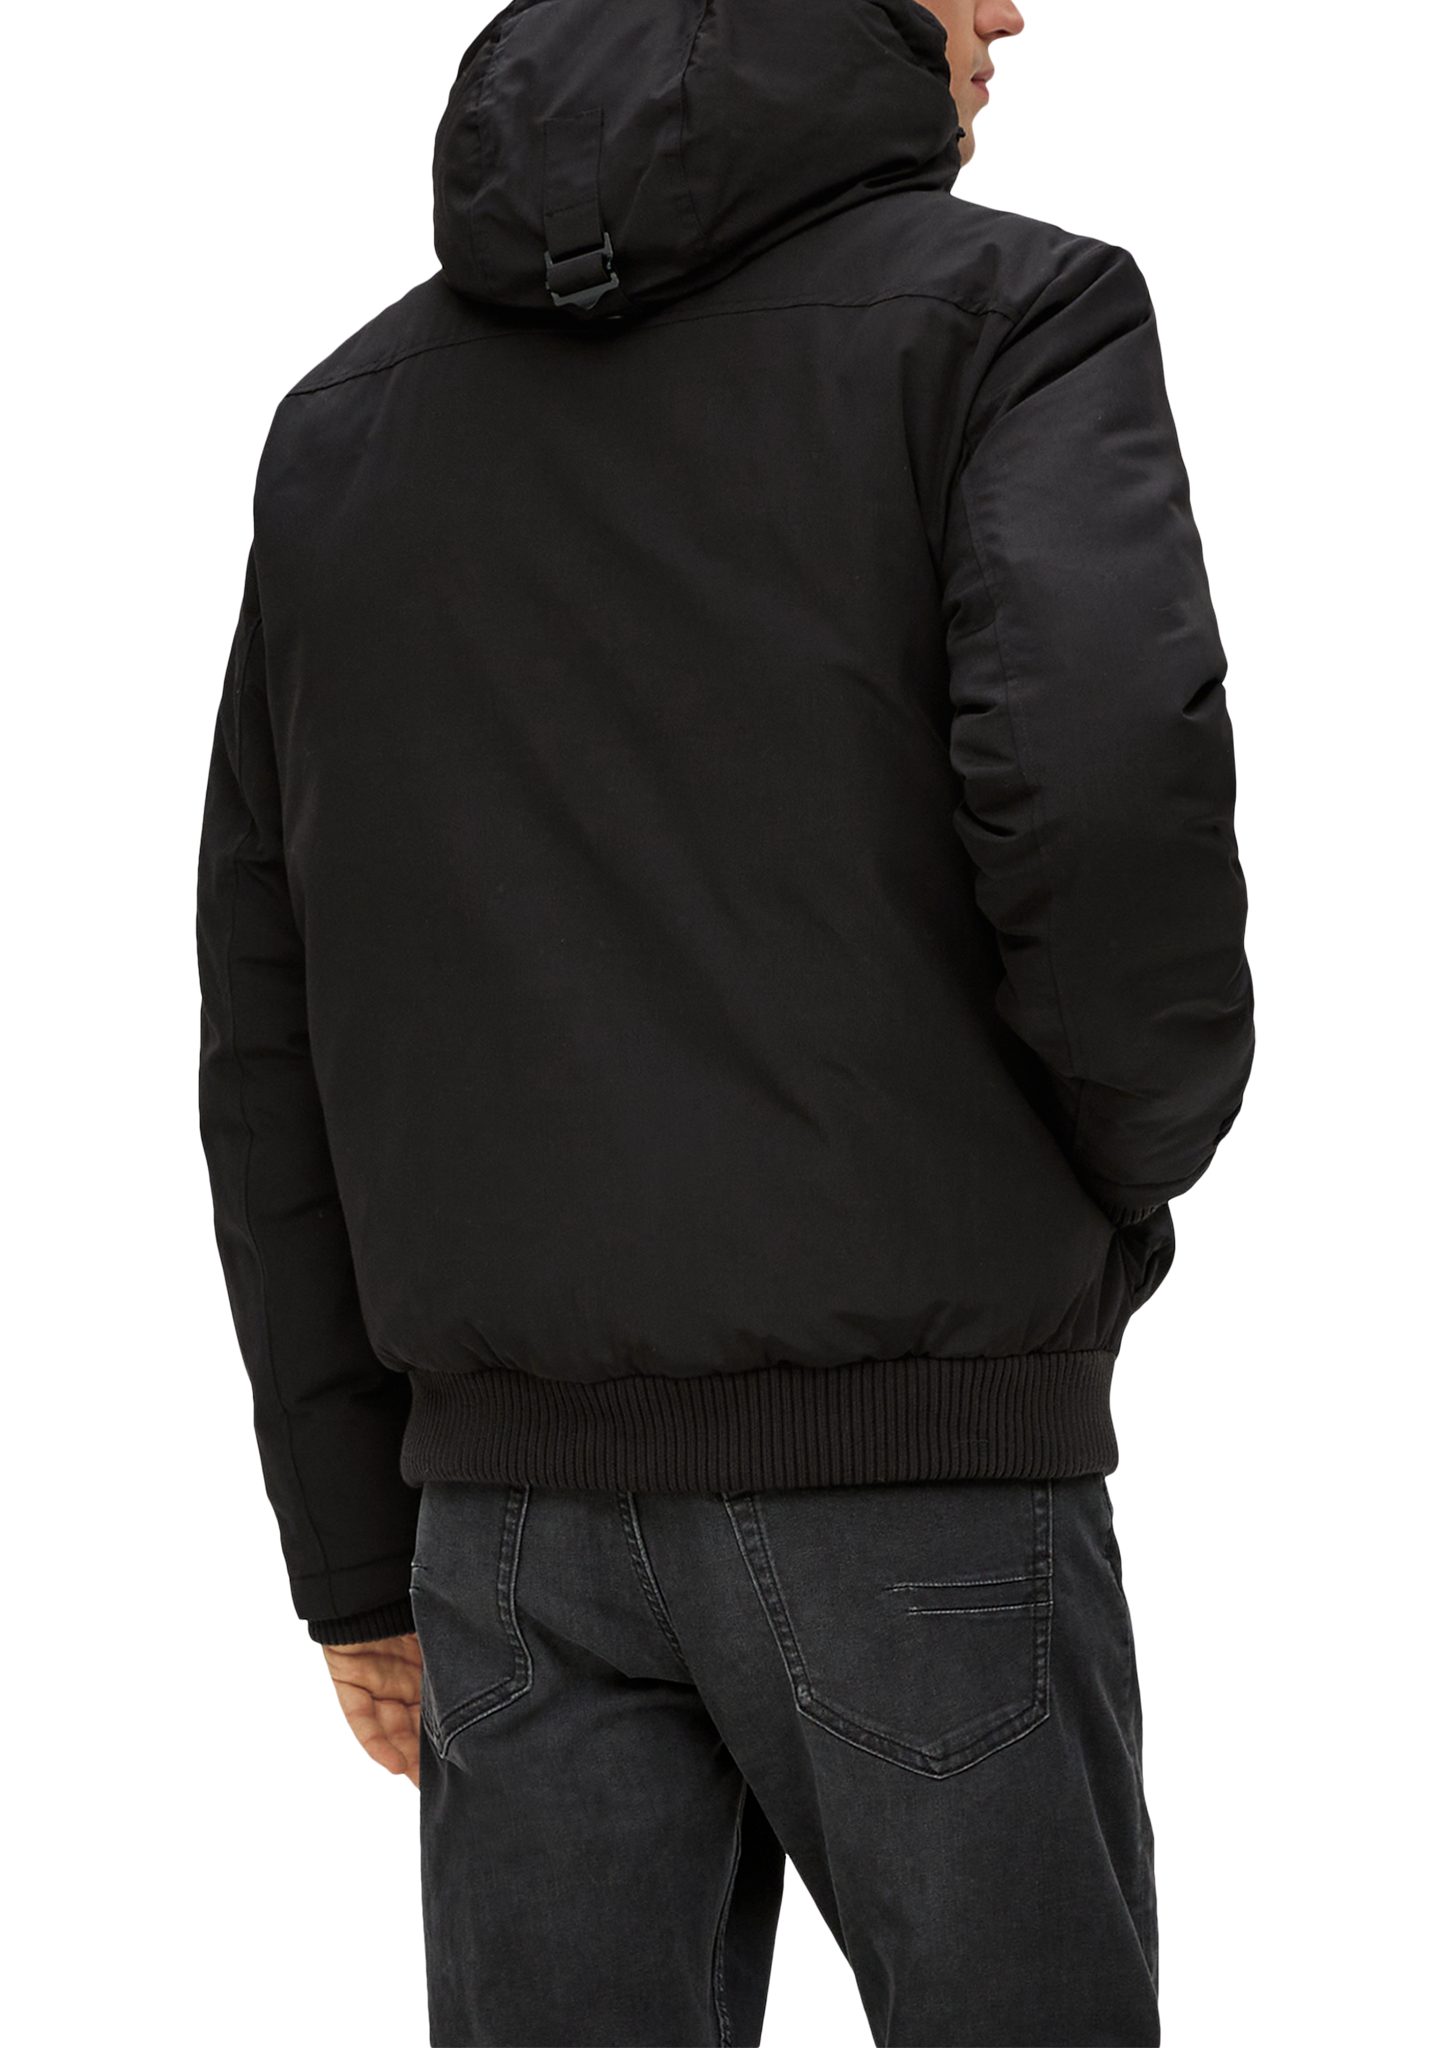 s.Oliver mit Allwetterjacke schwarz Jacke Pattentaschen